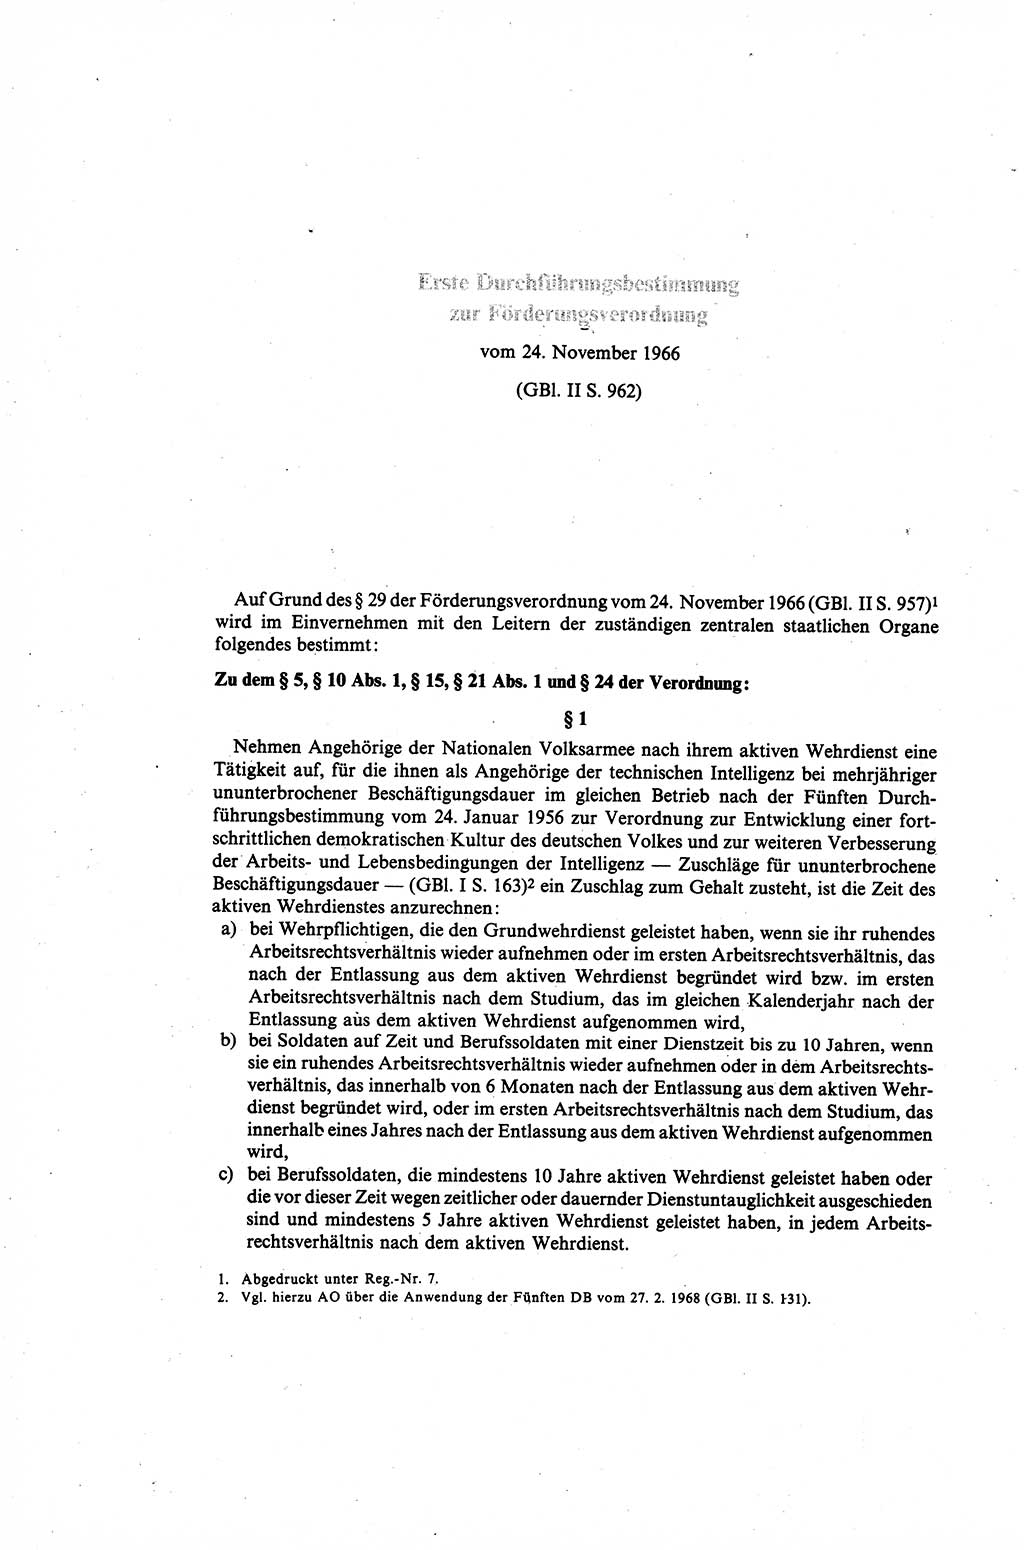 Gesetzbuch der Arbeit (GBA) und andere ausgewählte rechtliche Bestimmungen [Deutsche Demokratische Republik (DDR)] 1968, Seite 178 (GBA DDR 1968, S. 178)